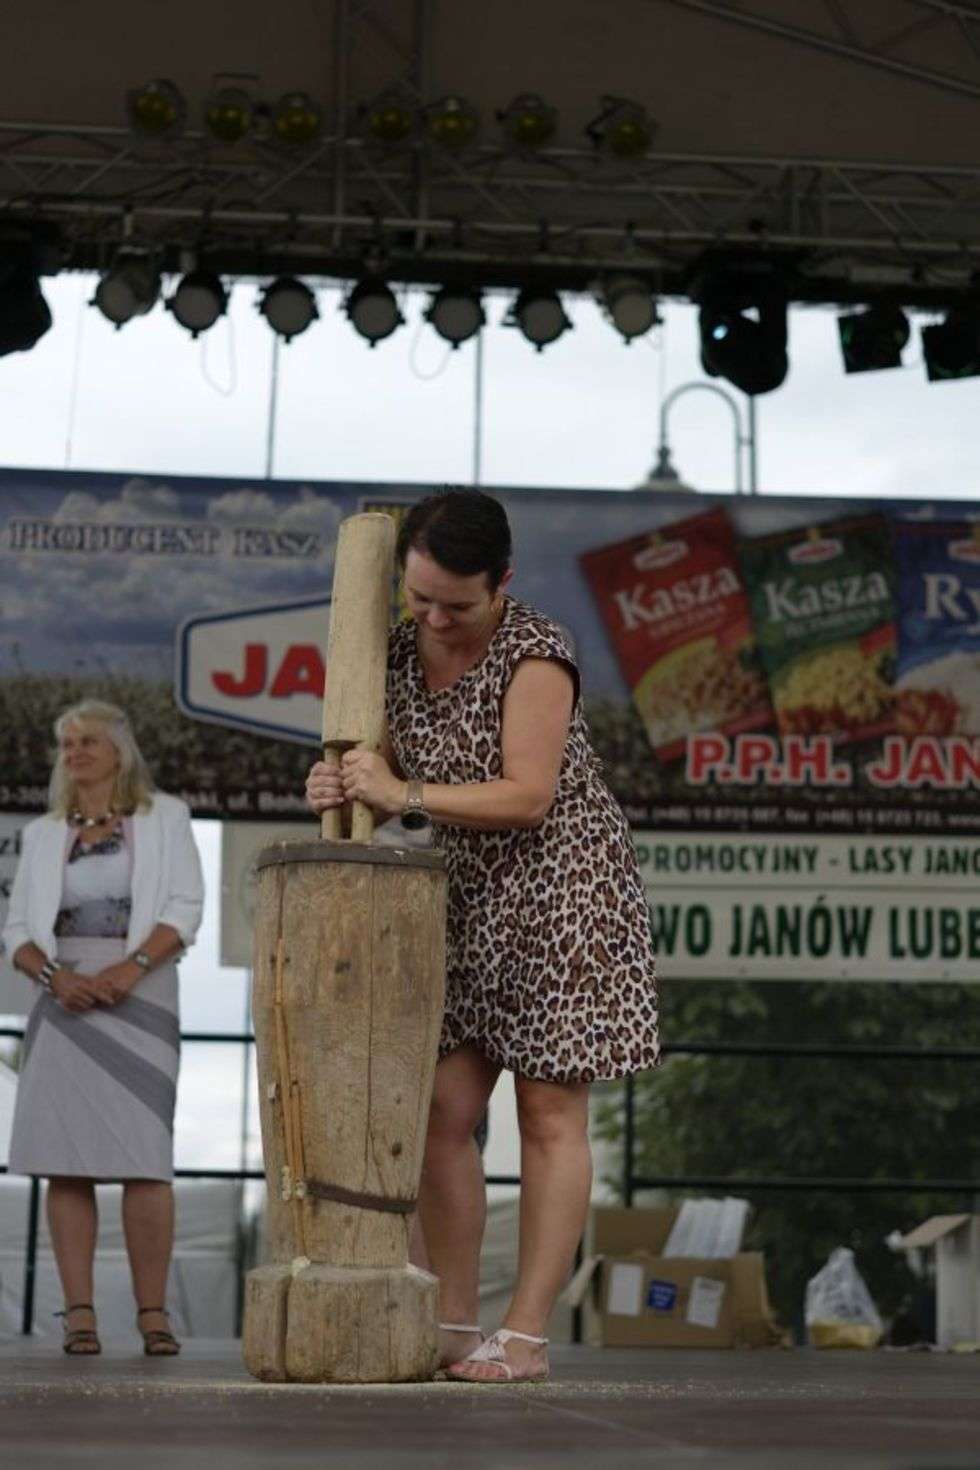  Ubijanie kaszy w stępie to symbol janowskiego festiwalu